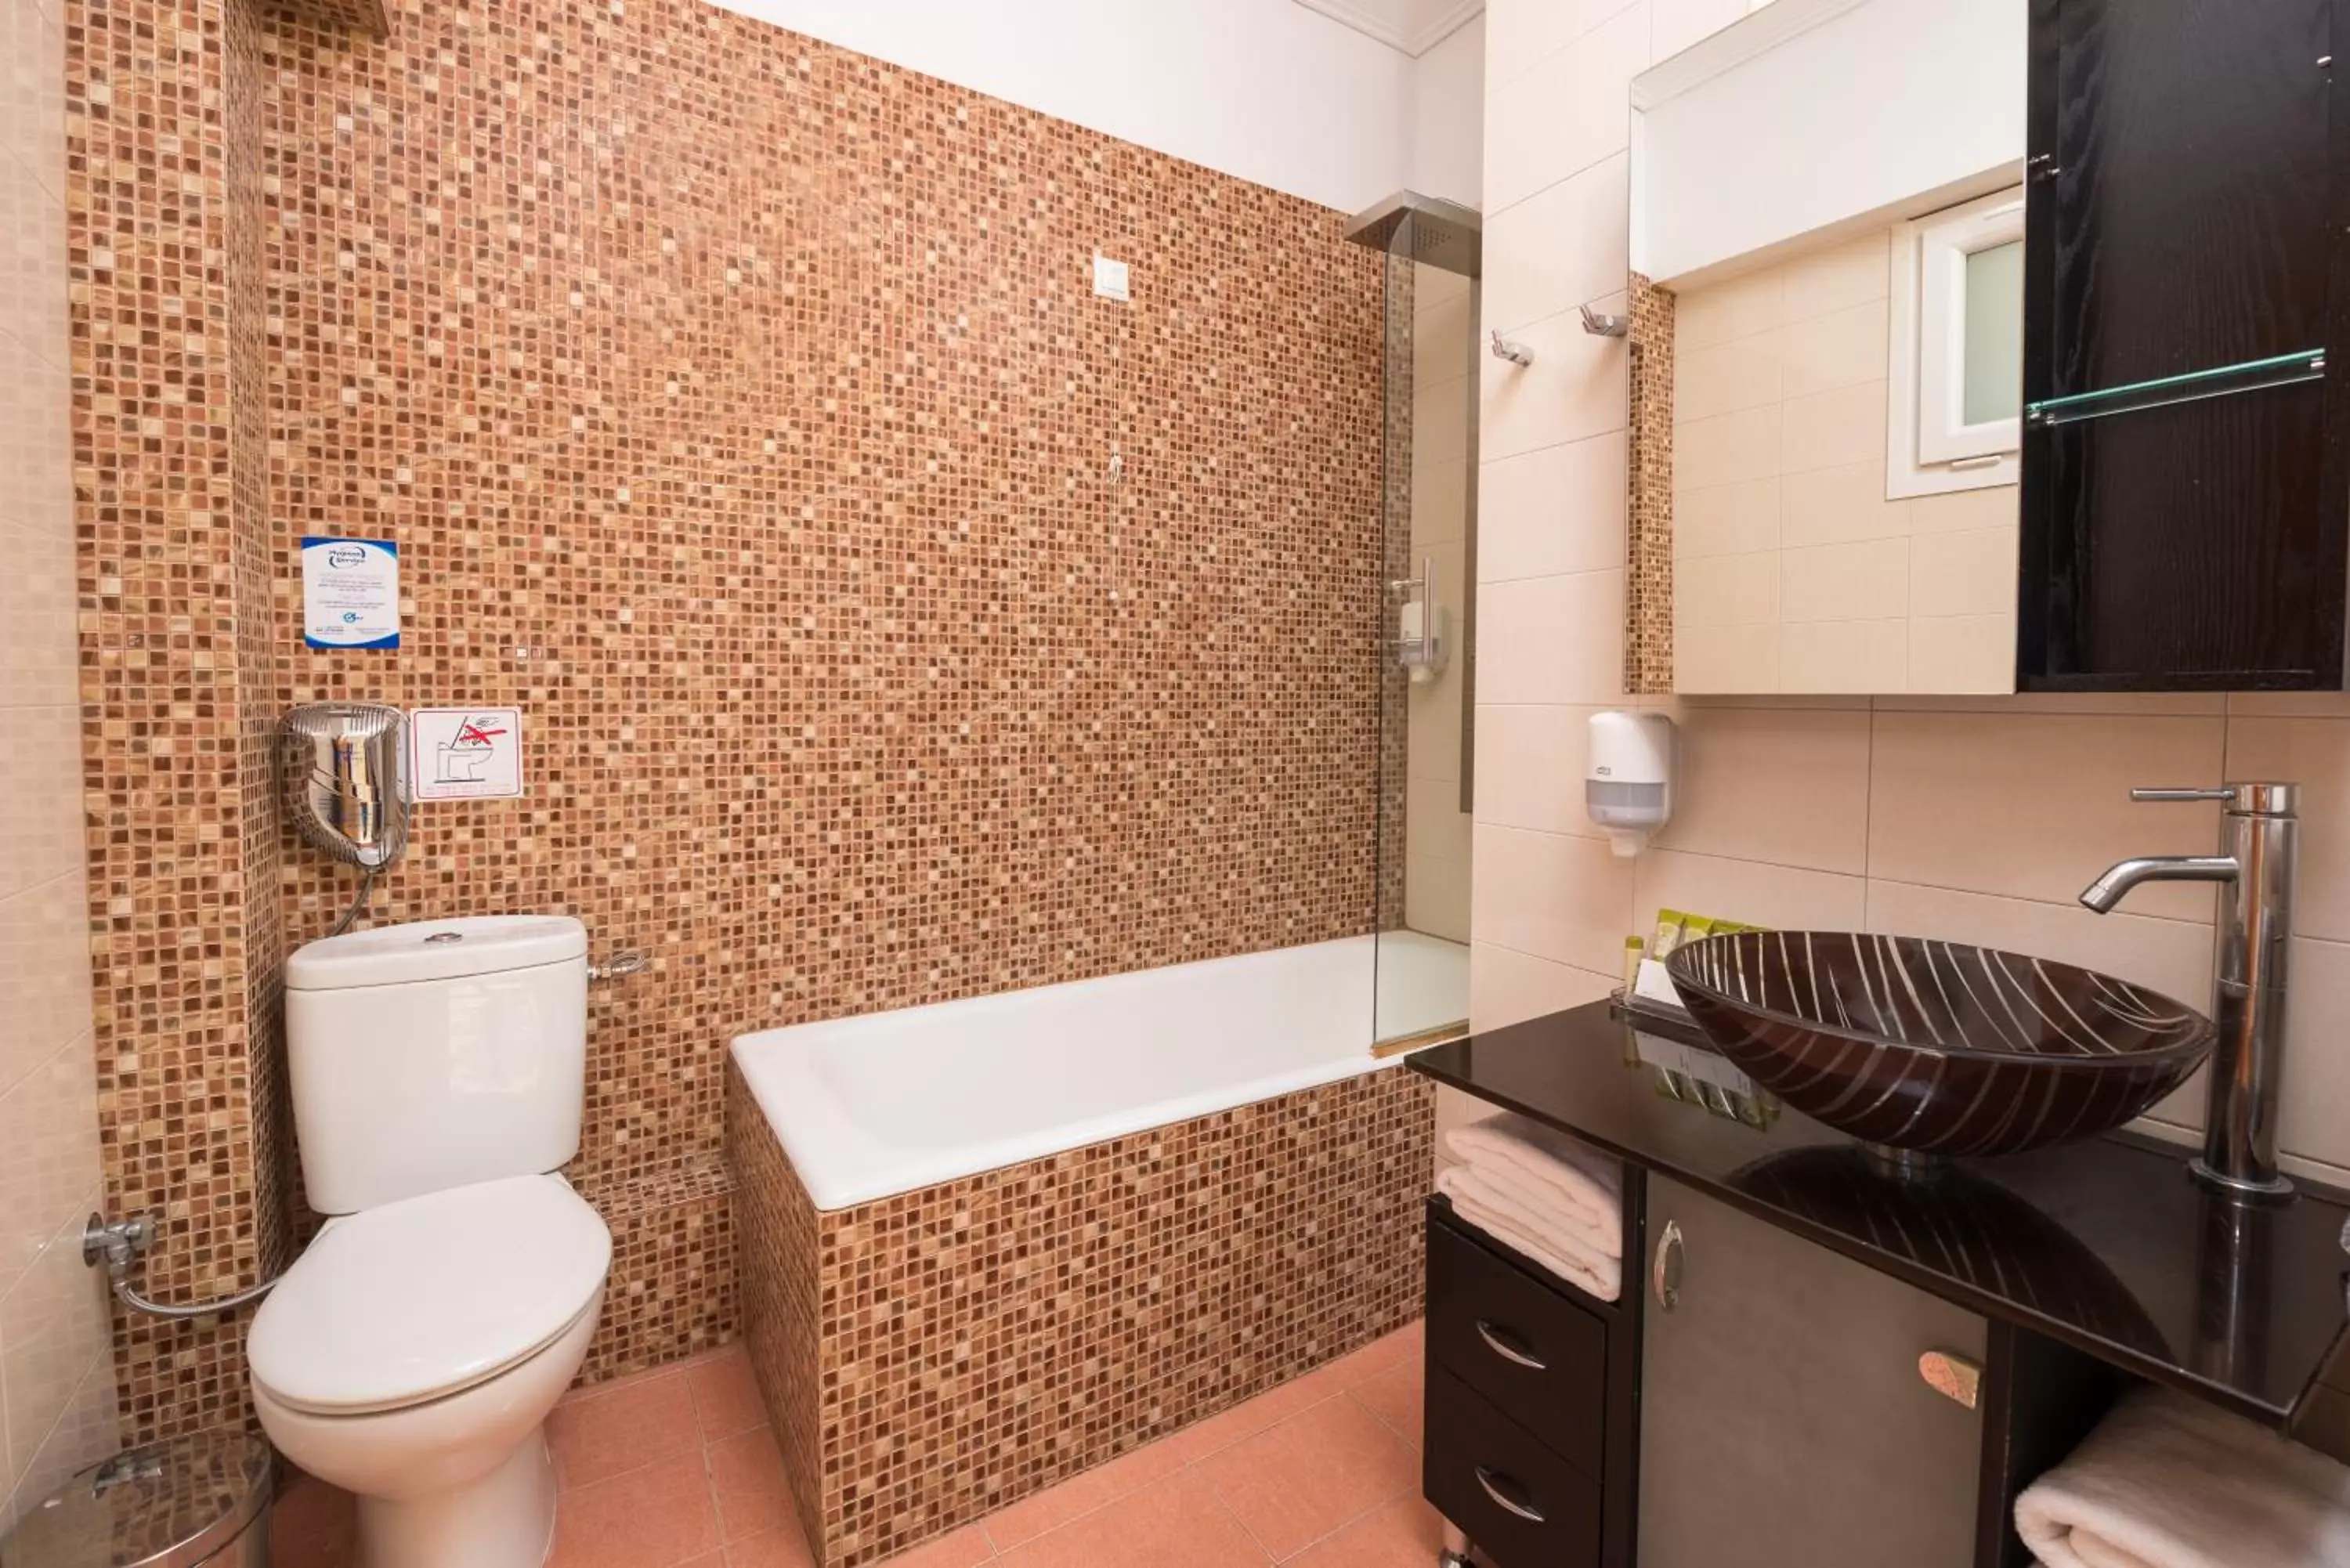 Toilet, Bathroom in Heliotrope Hotels